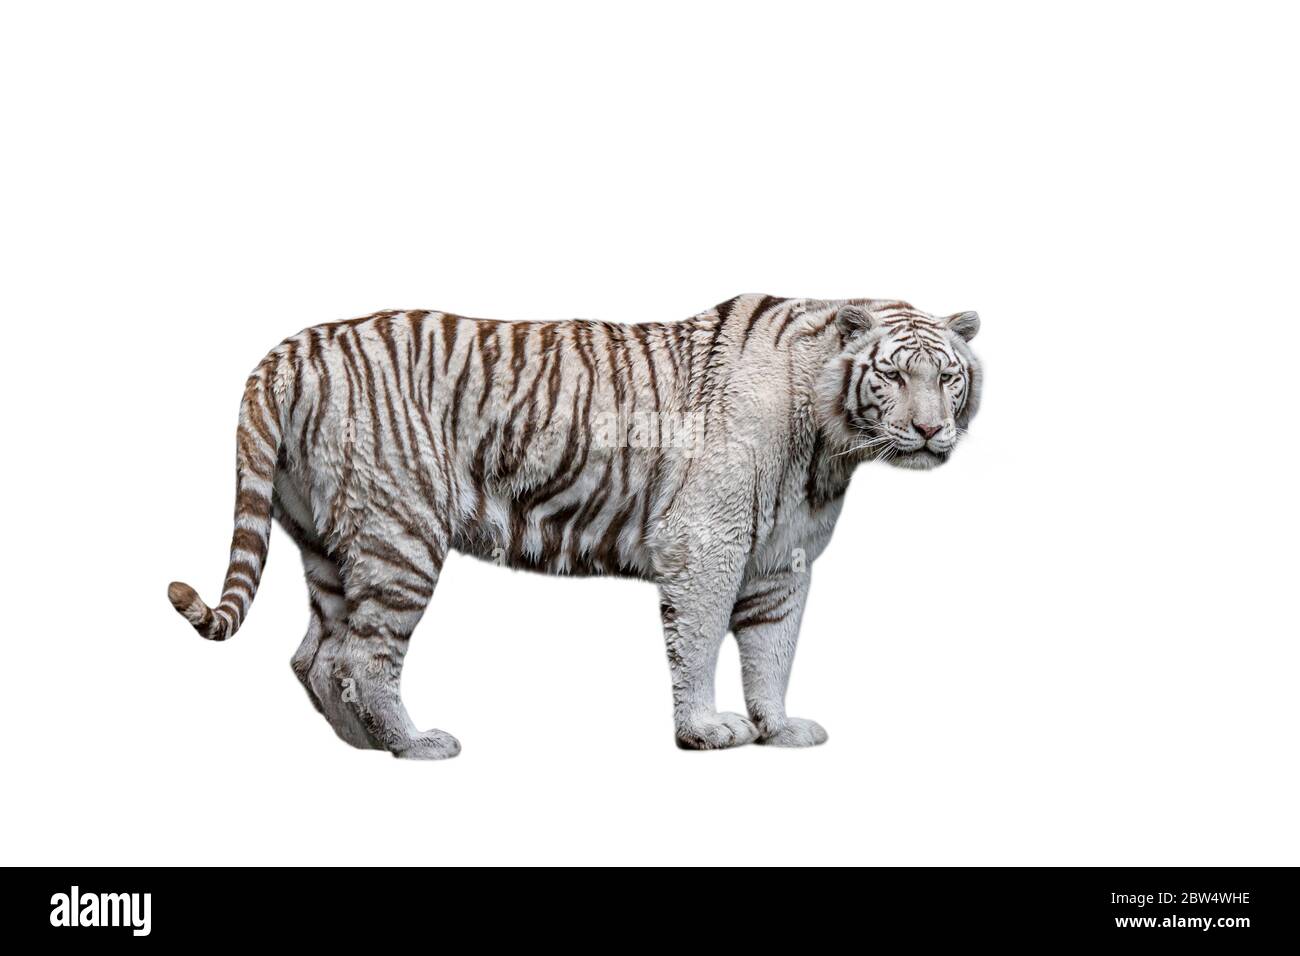 Weißer Tiger / gebleichter Tiger (Panthera tigris) Pigmentvariante des in Indien heimischen Bengalen Tigers vor weißem Hintergrund Stockfoto